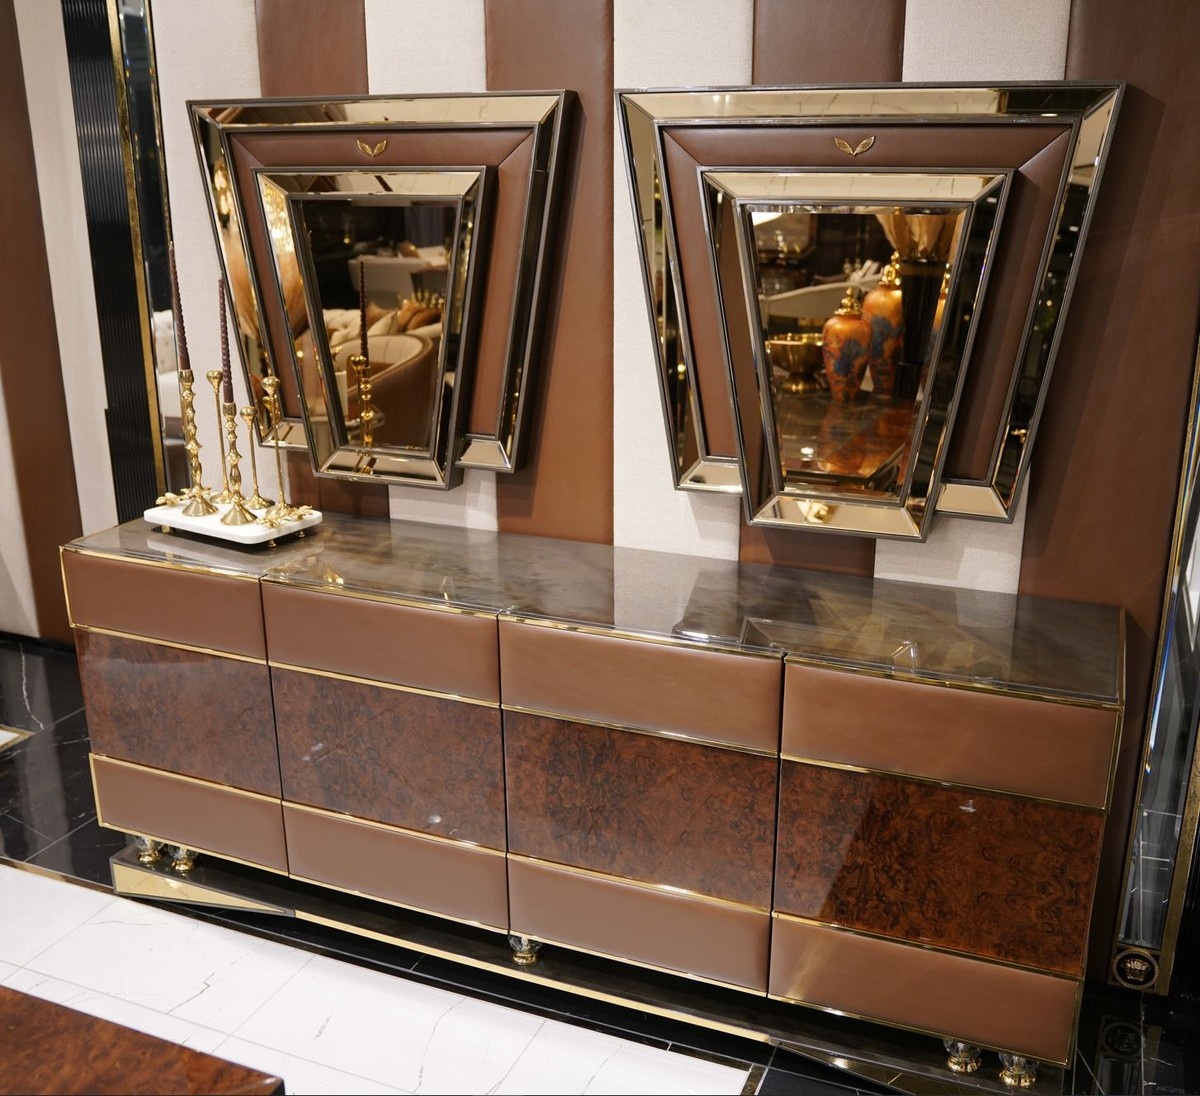 Casa Padrino Luxus Möbel Set Braun / Grau / Gold - 1 Luxus Sideboard mit 4 Türen & 2 Luxus Spiegel - Wohnzimmer Möbel - Luxus Möbel - Luxus Einrichtung - Wohnzimmer Einrichtung - Luxus Qualität